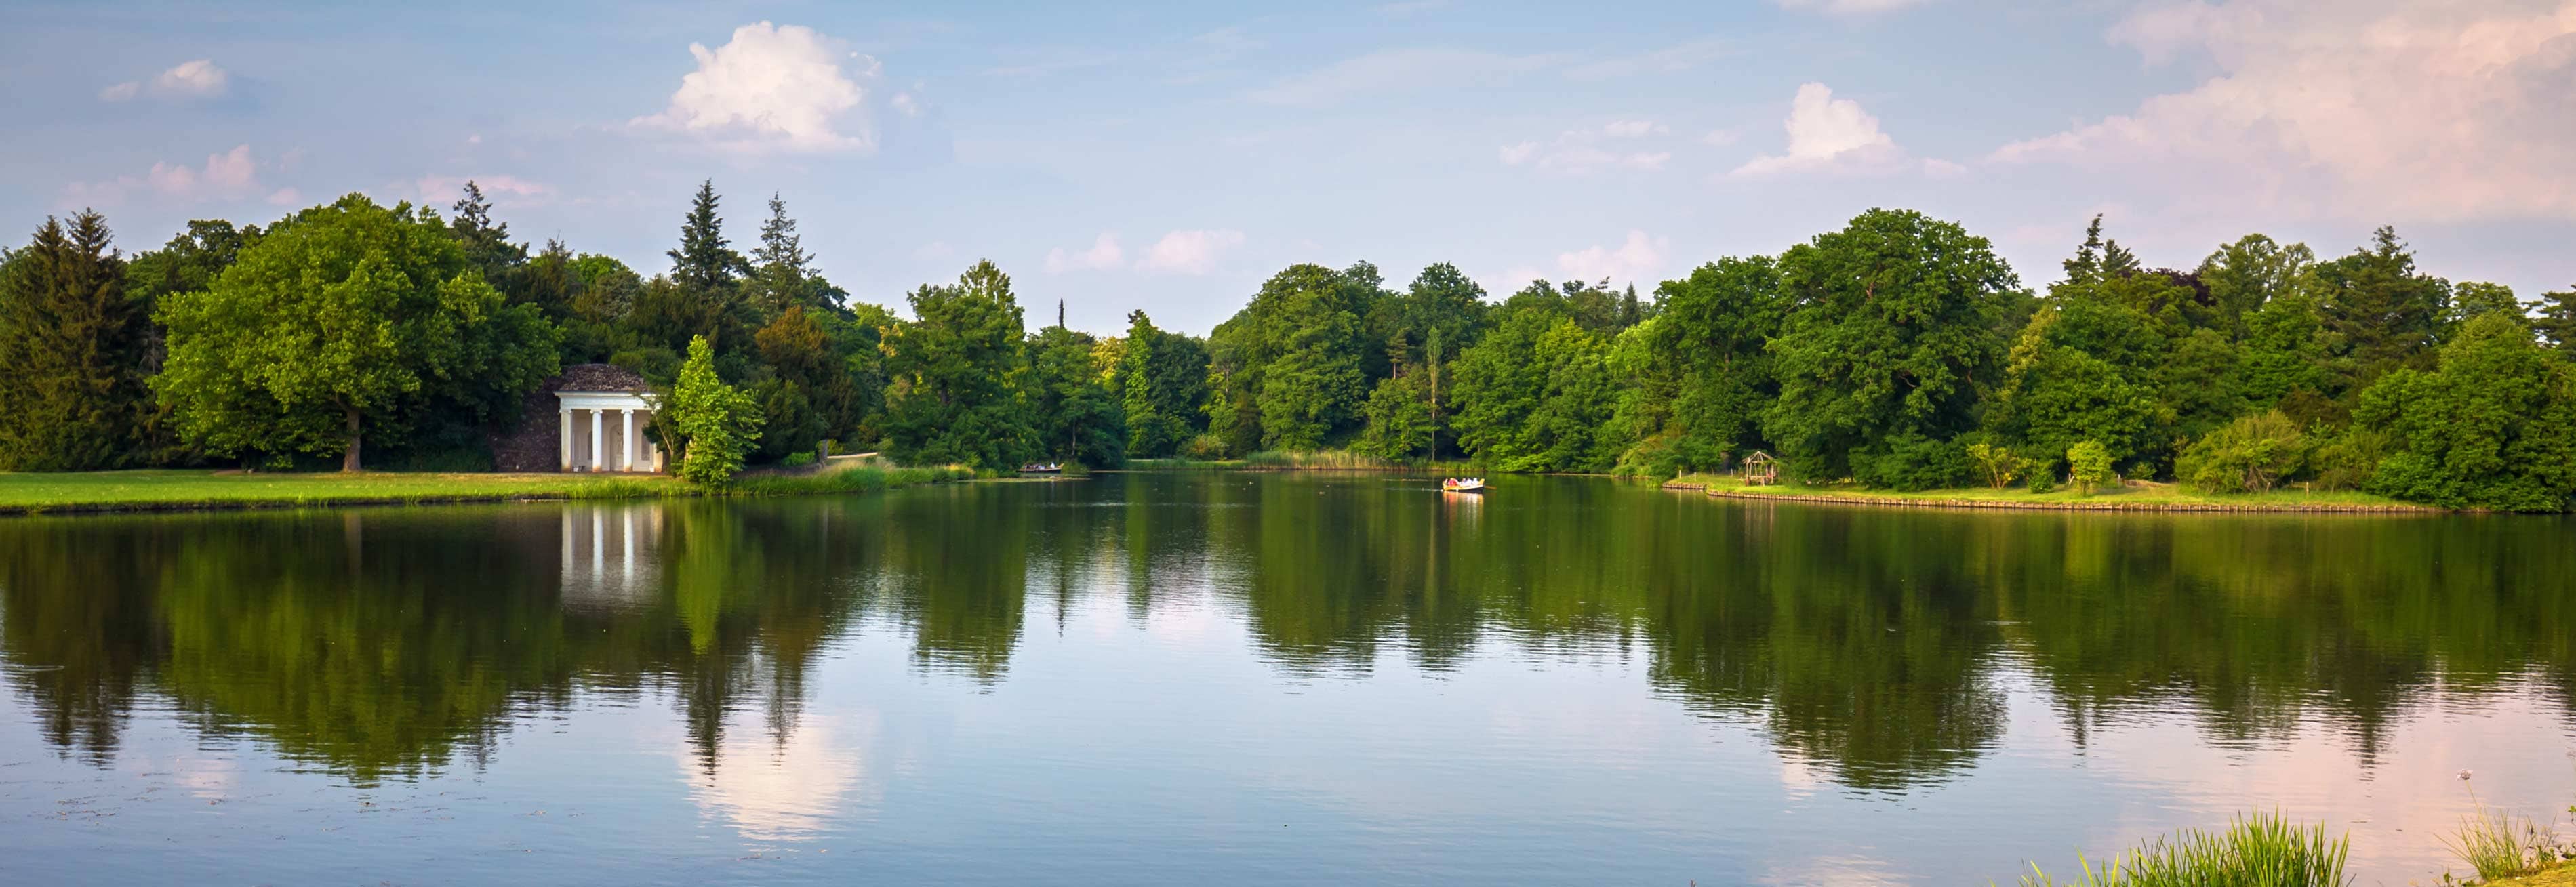 Aufnahme des großen Sees im Gartenreich Desau Wörlitz, nahe des Hotels Elbebrücke